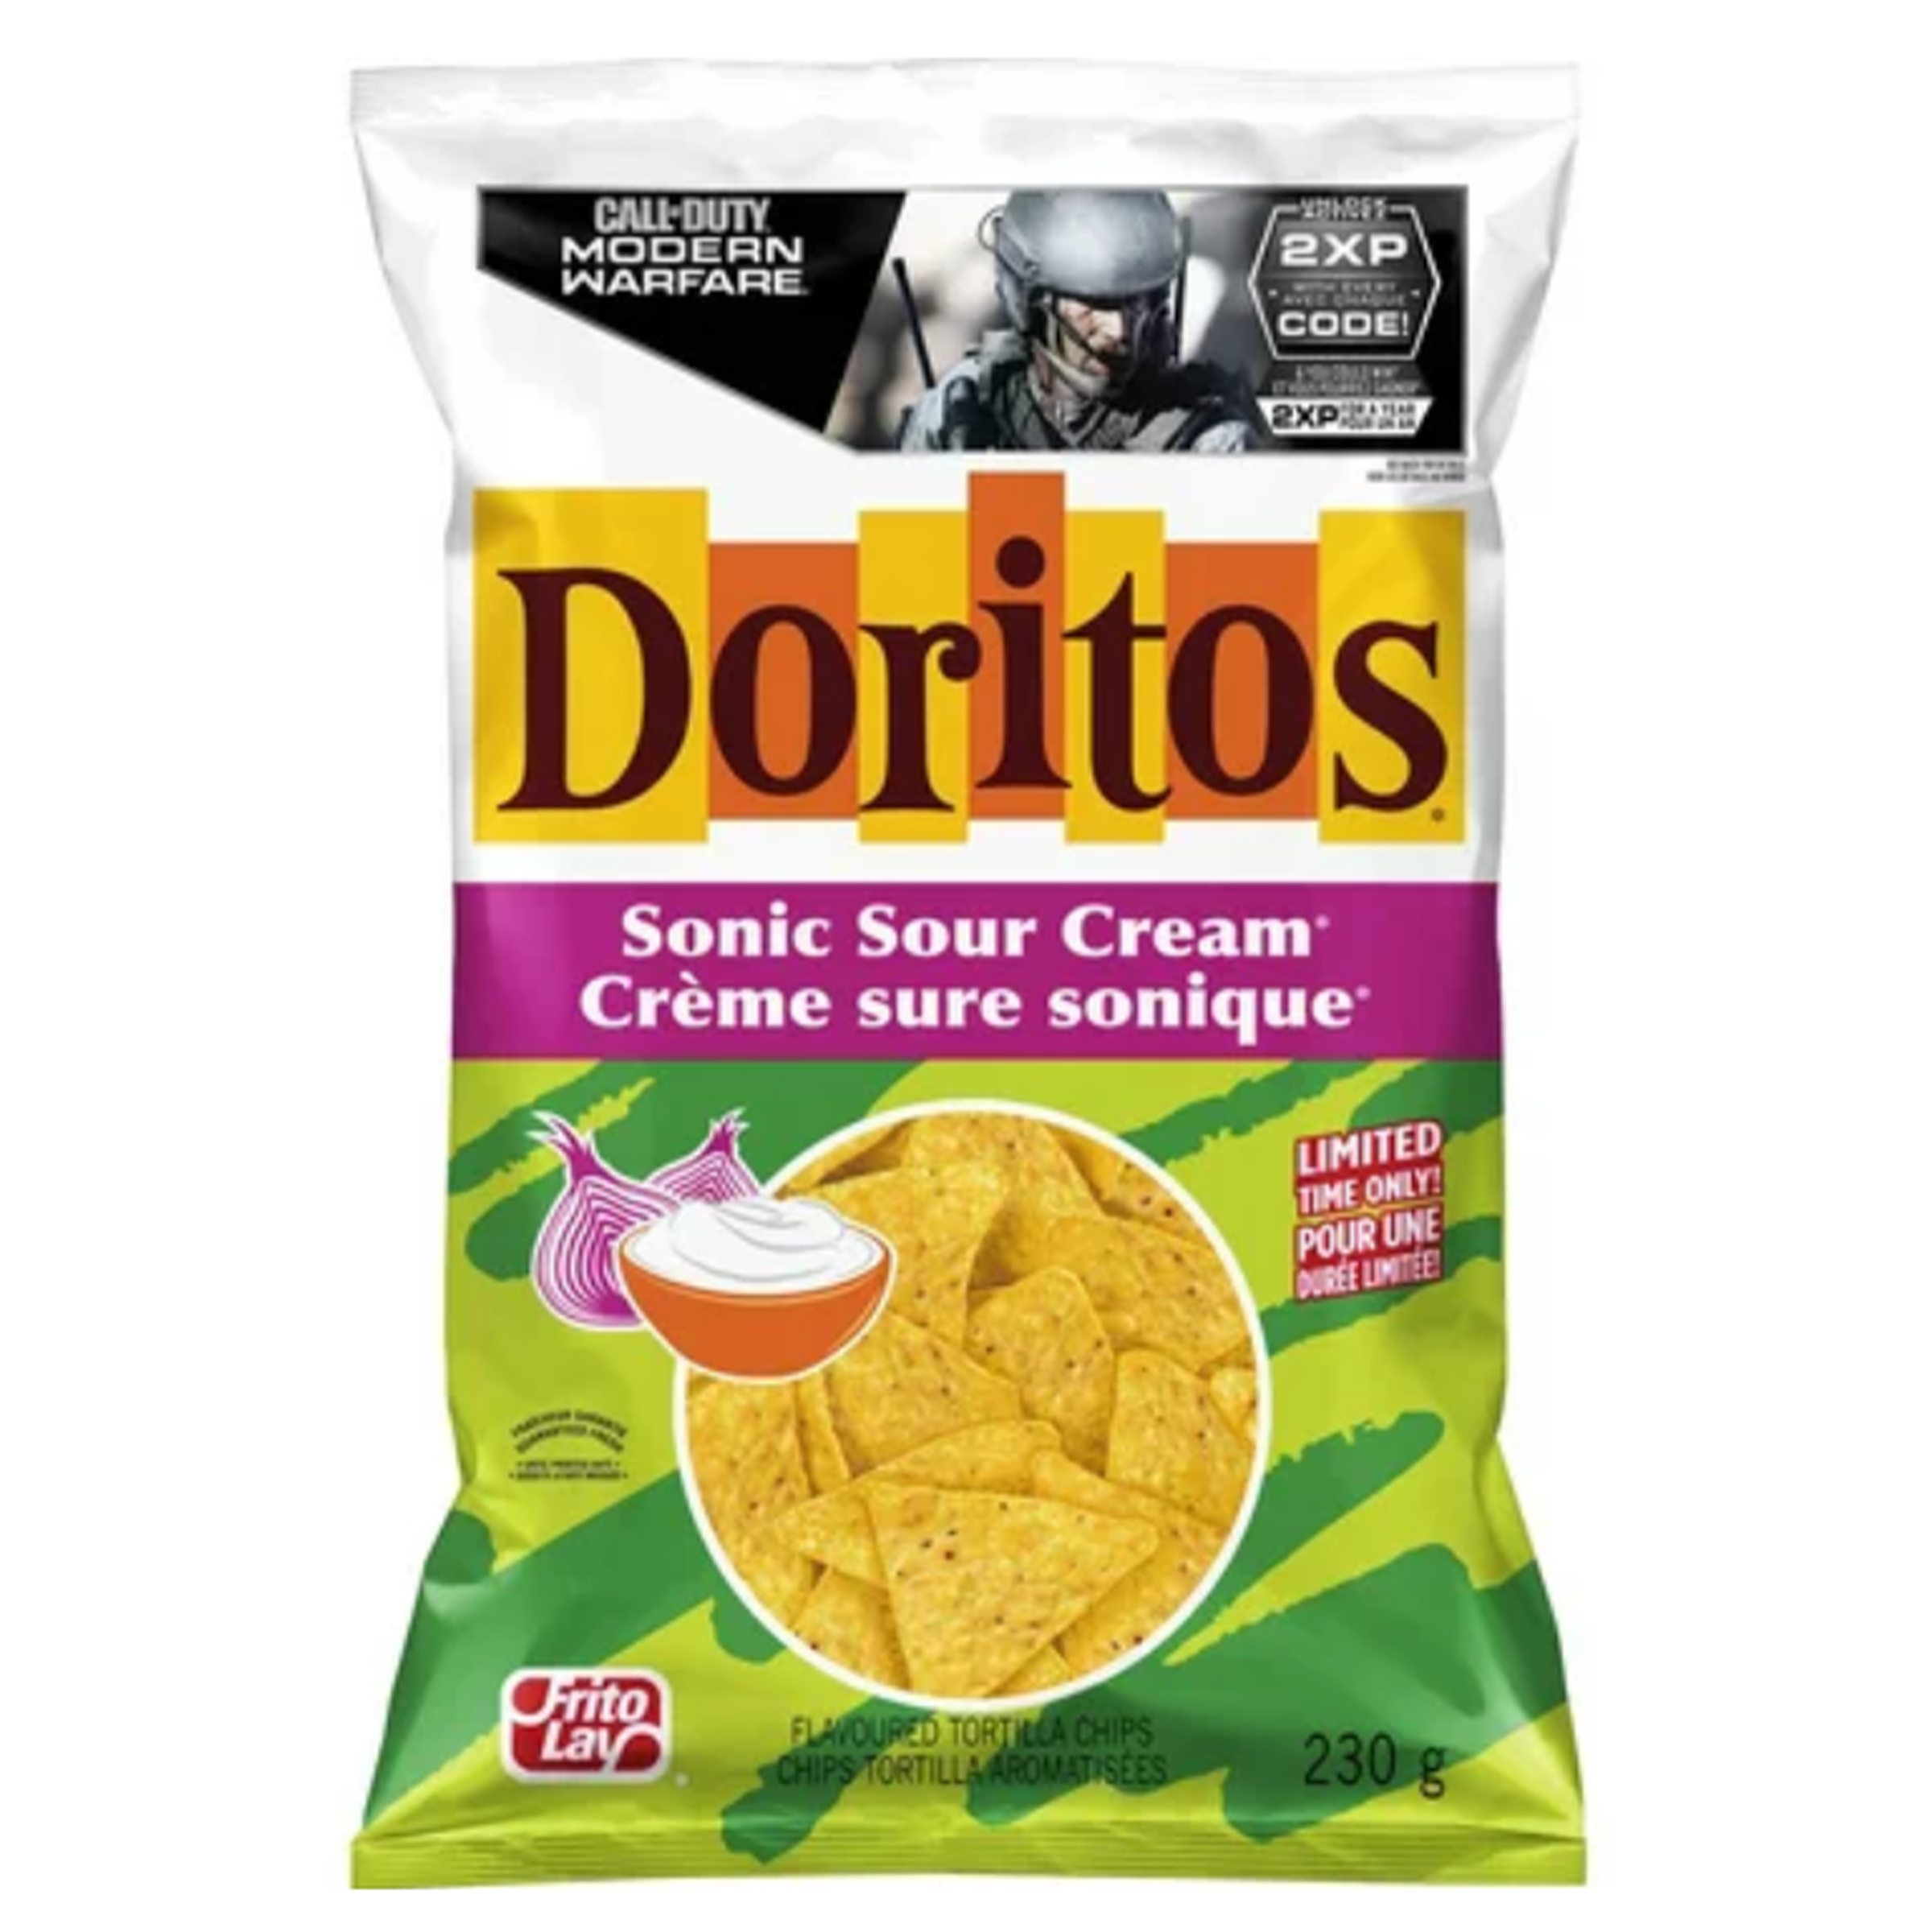 Doritos - Sonic Sour Cream